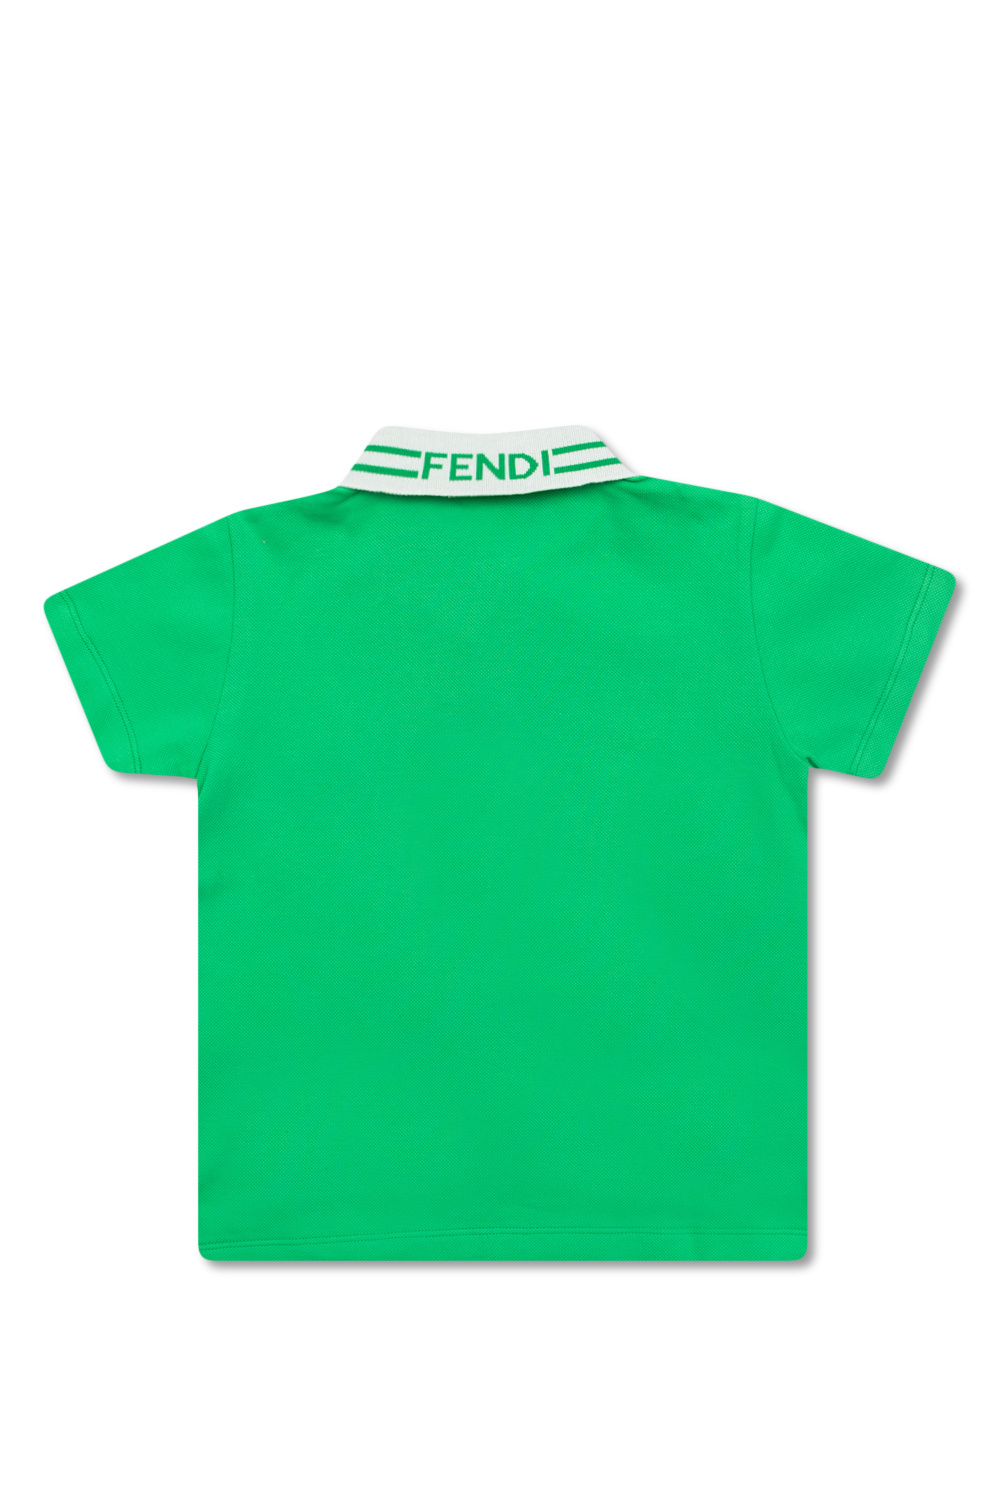 Fendi Kids storage robes wallets men polo-shirts